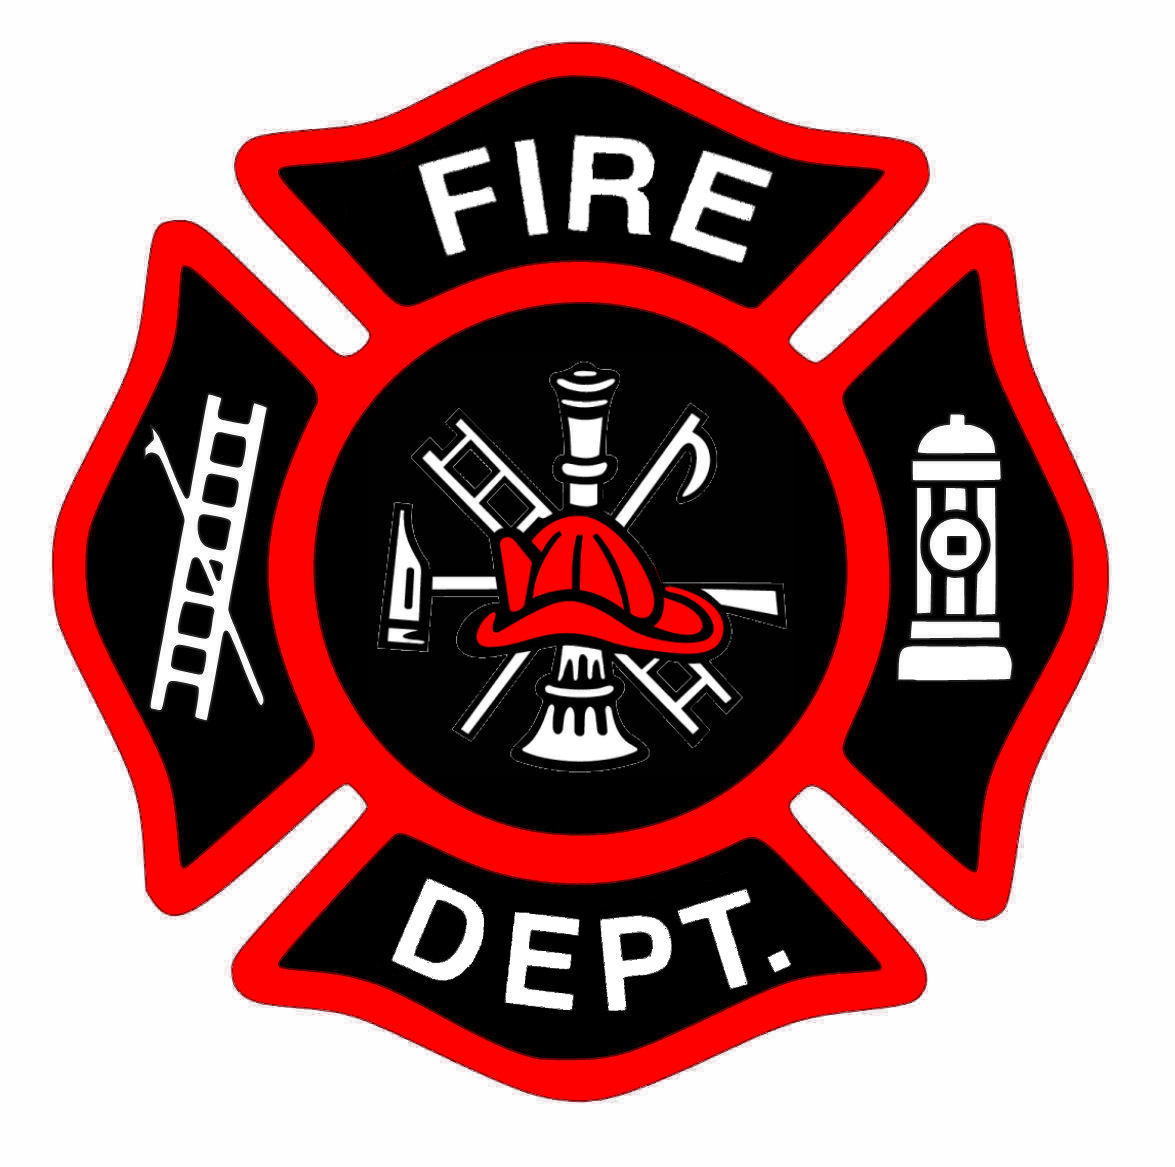 Firemen Logo - Firefighter fireman emblem clipart clipart kid